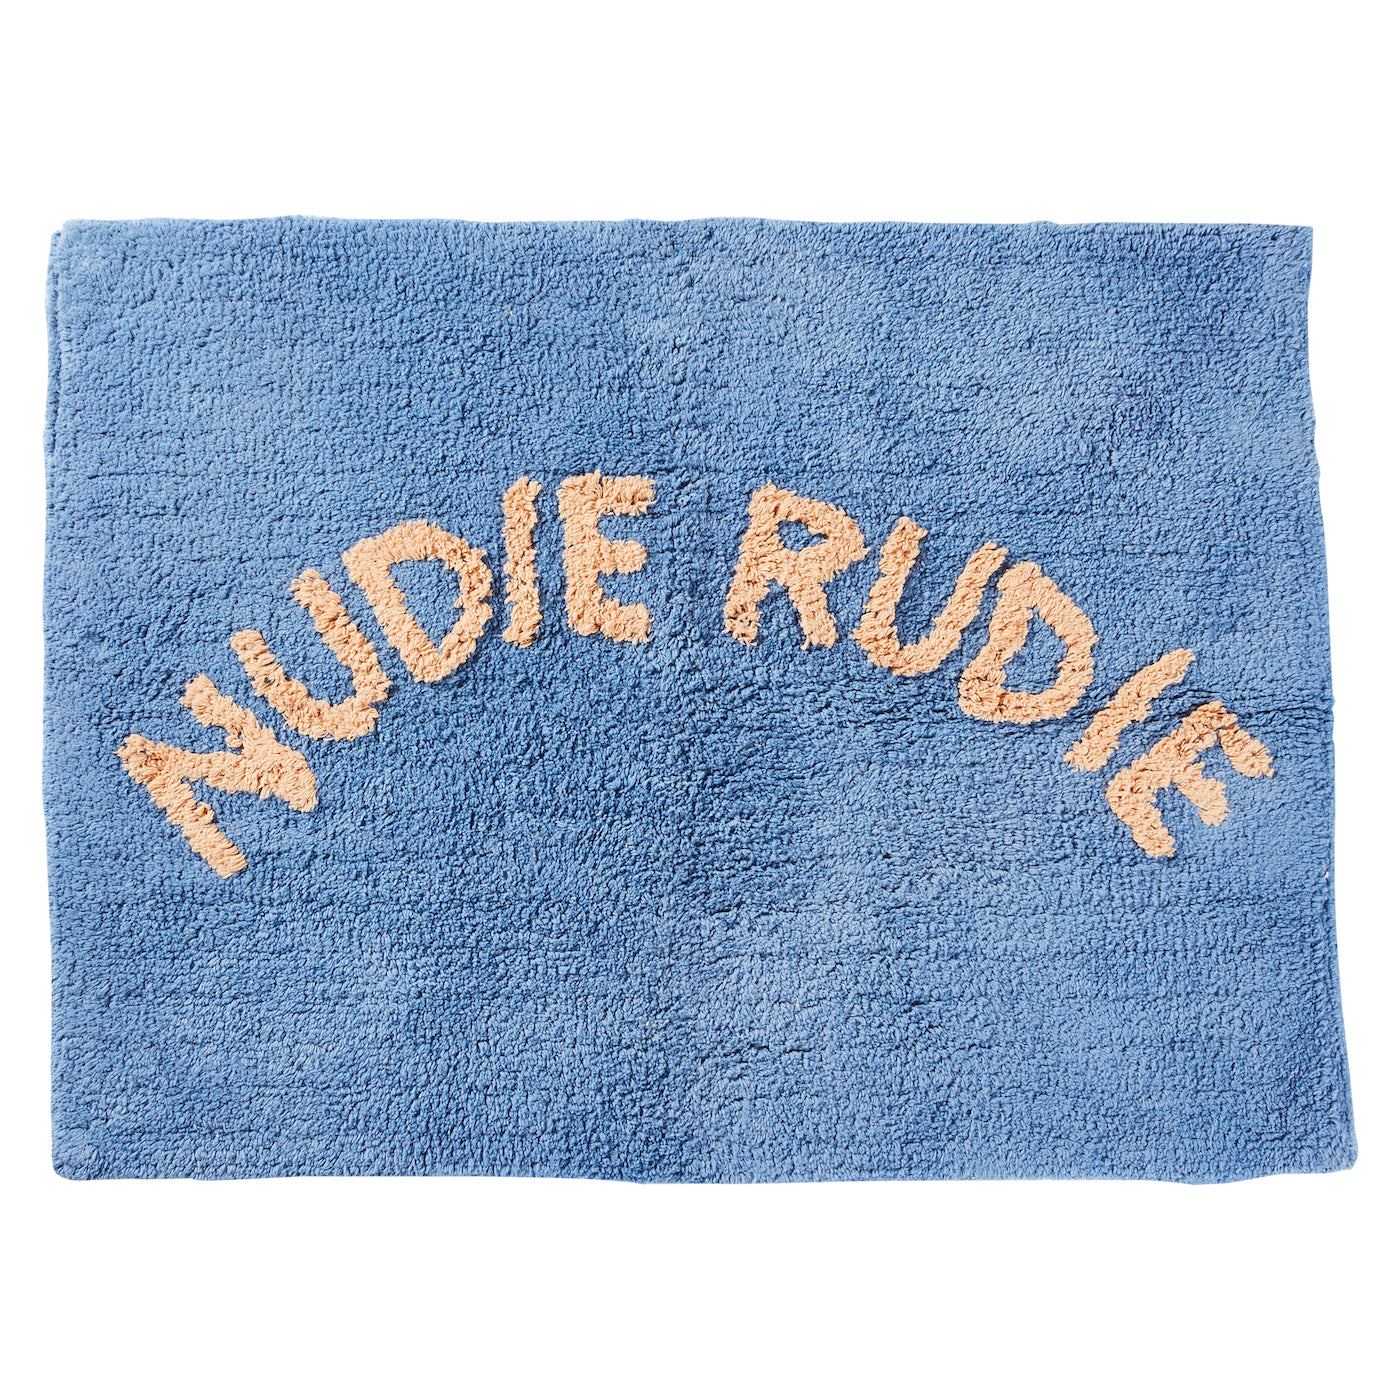 Tula Nudie Rudie Cotton Mat Cornflower Blue Sage x Clare